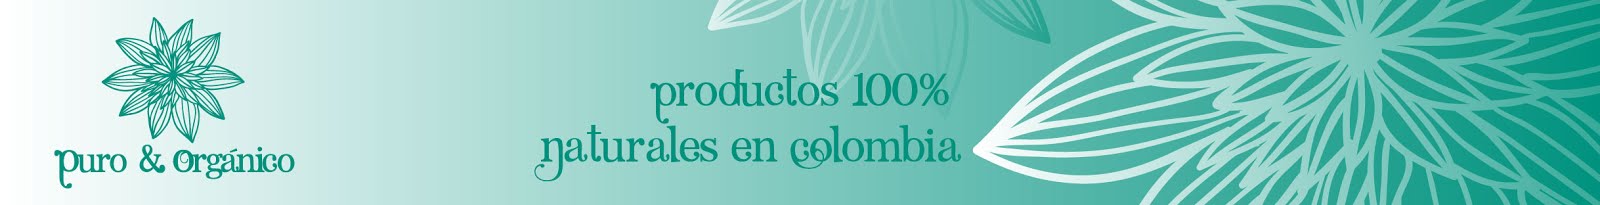 Tienda de productos organicos en Colombia, Bogota.